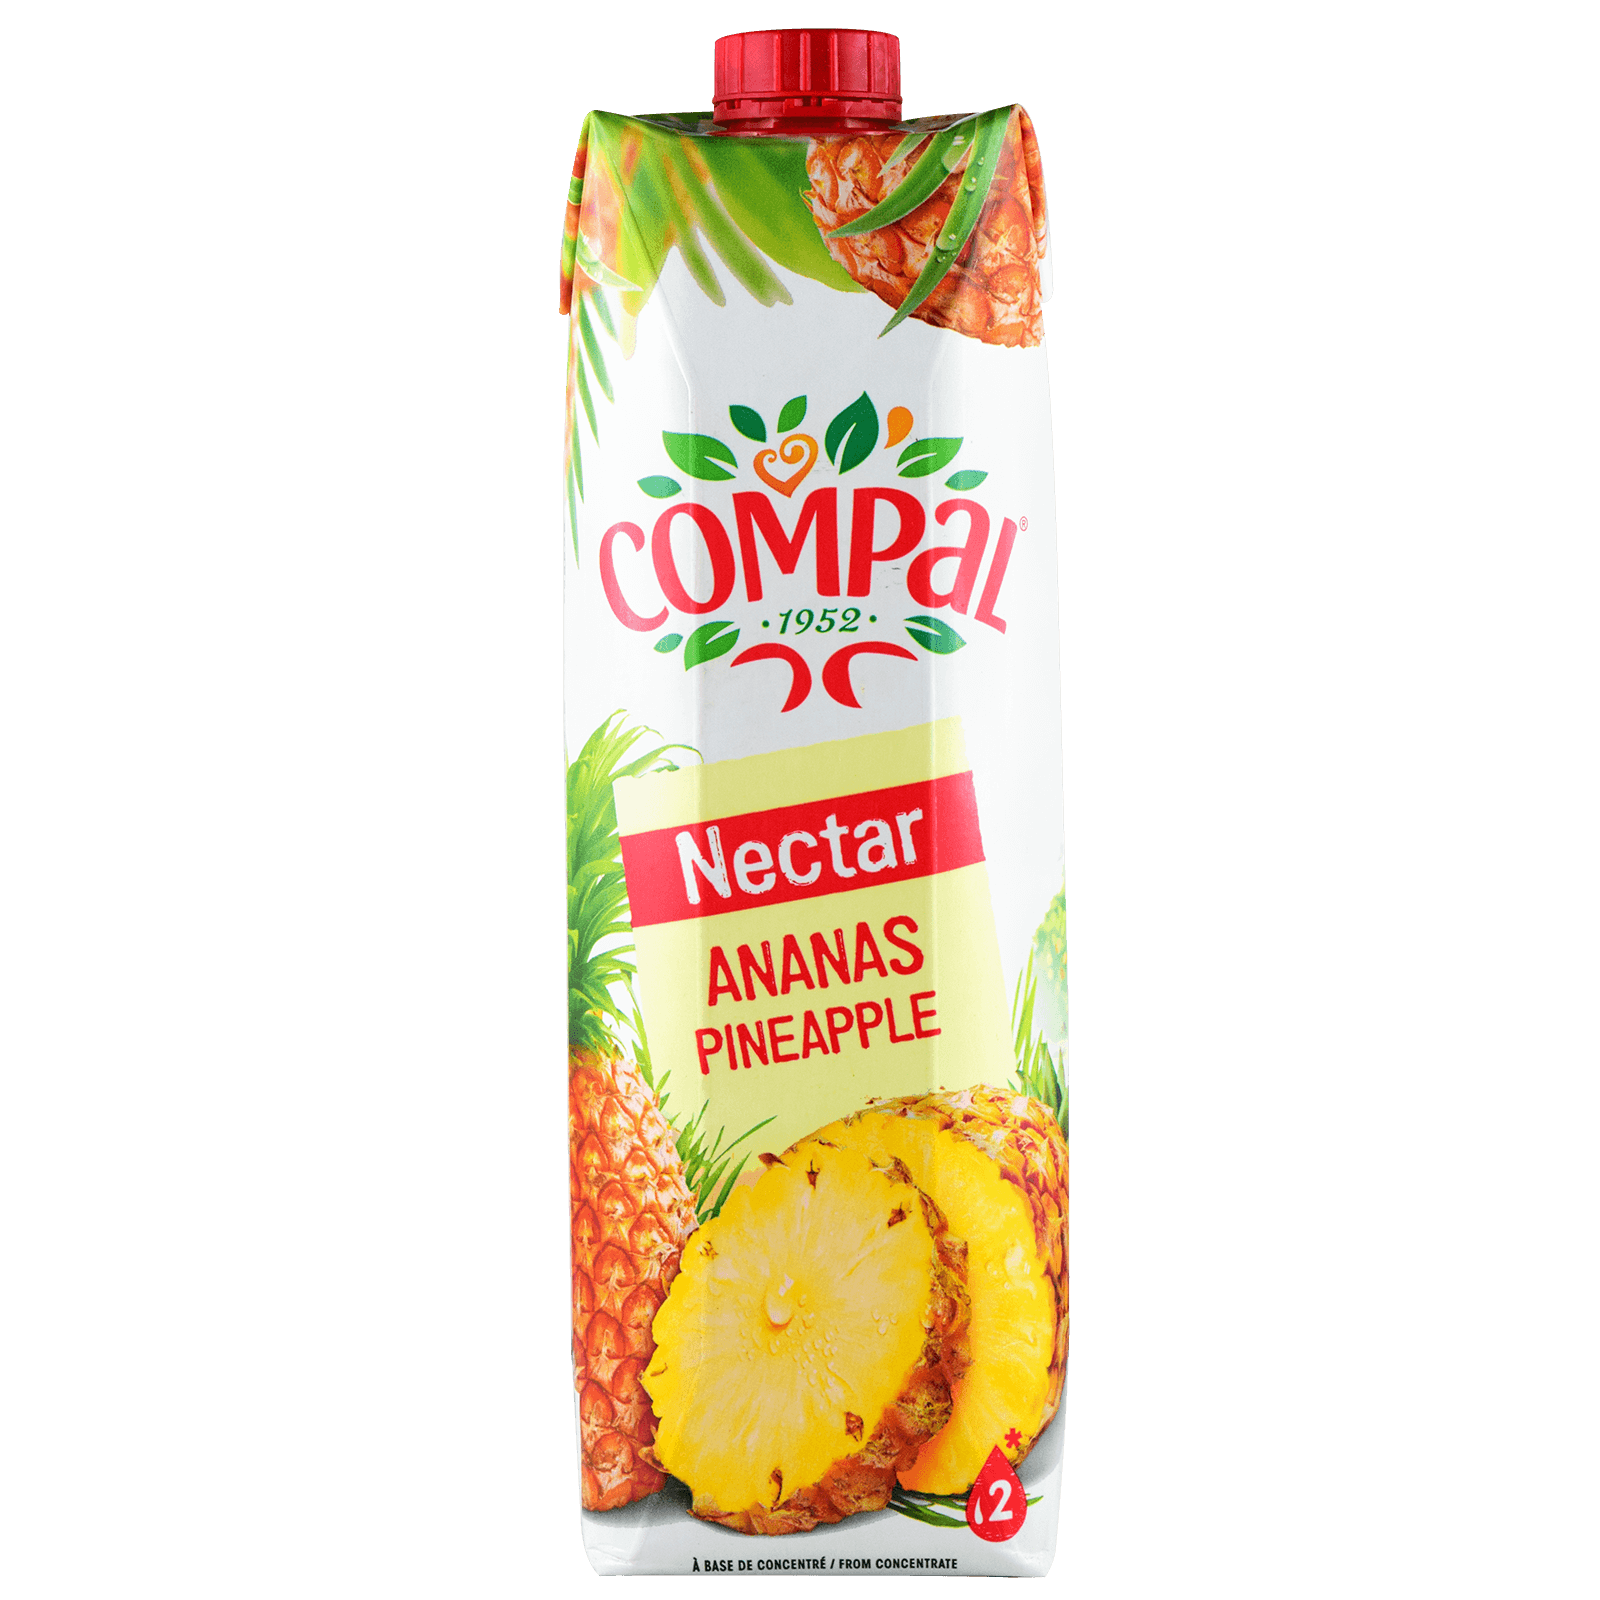 juice clipart pineapple juice